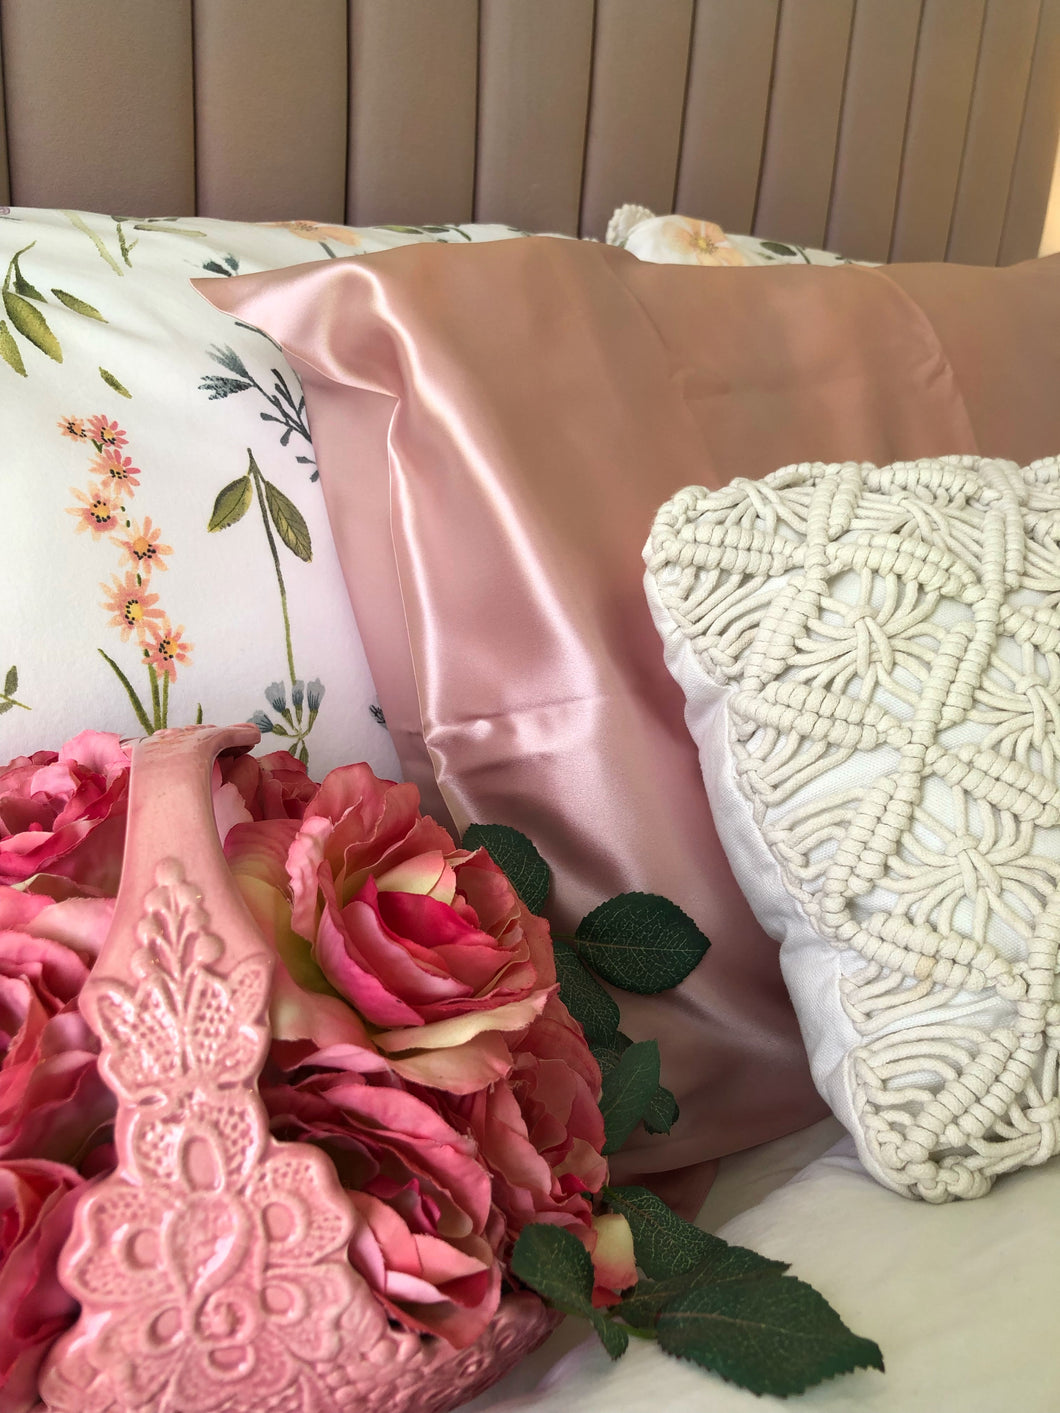 Silk Pillowcase - Pink